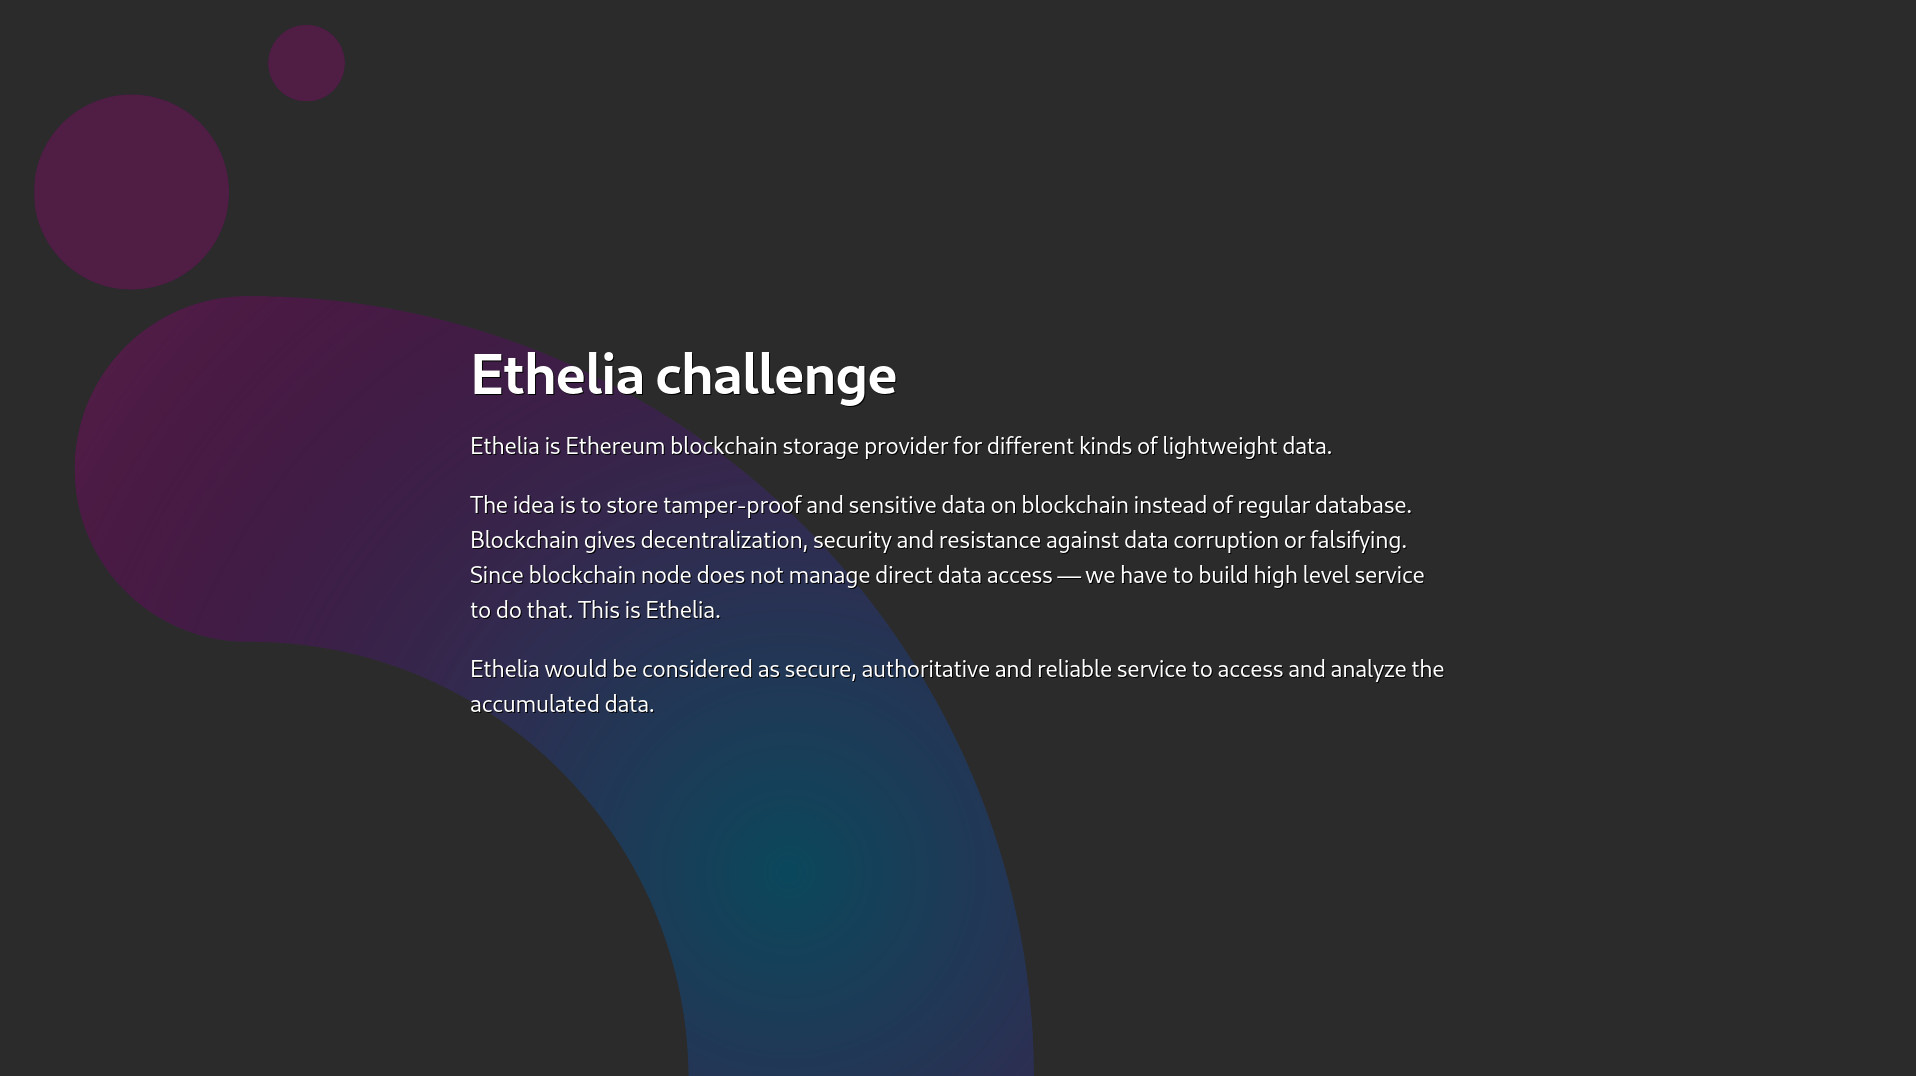 Ethelia challenge